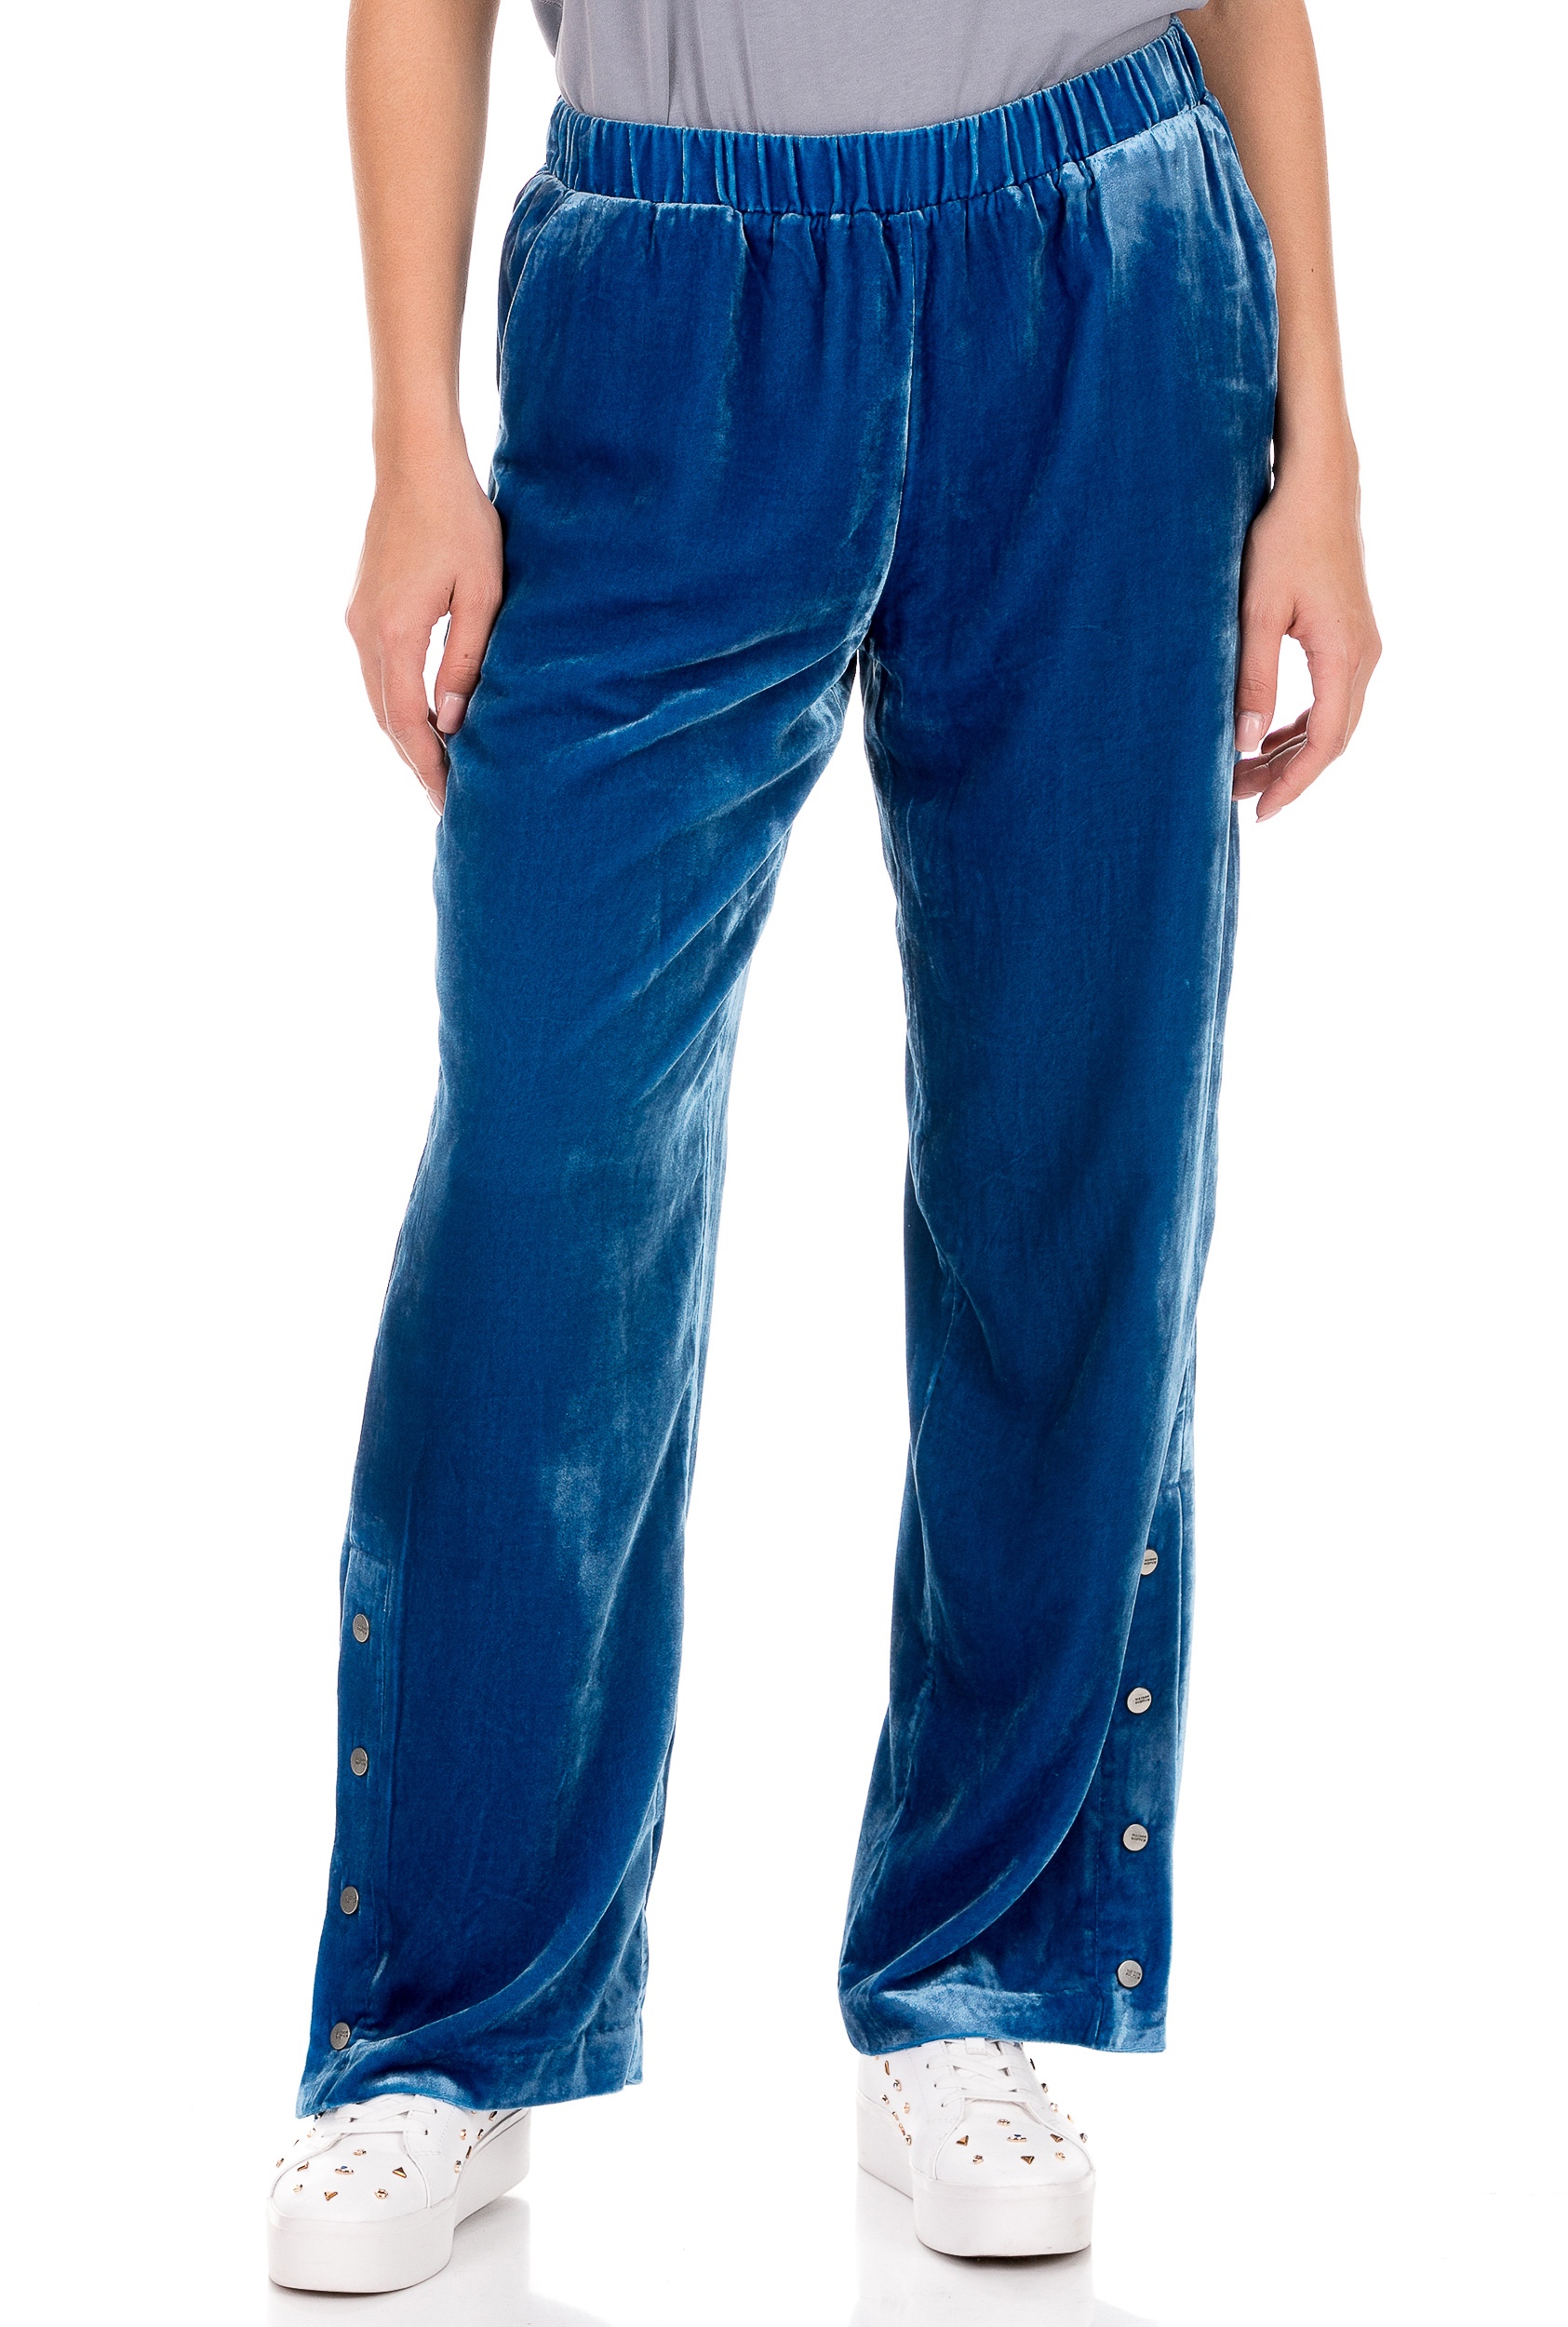 Γυναικεία/Ρούχα/Παντελόνια/Φόρμες SCOTCH & SODA - Γυναικείο παντελόνι φόρμας SCOTCH & SODA μπλε